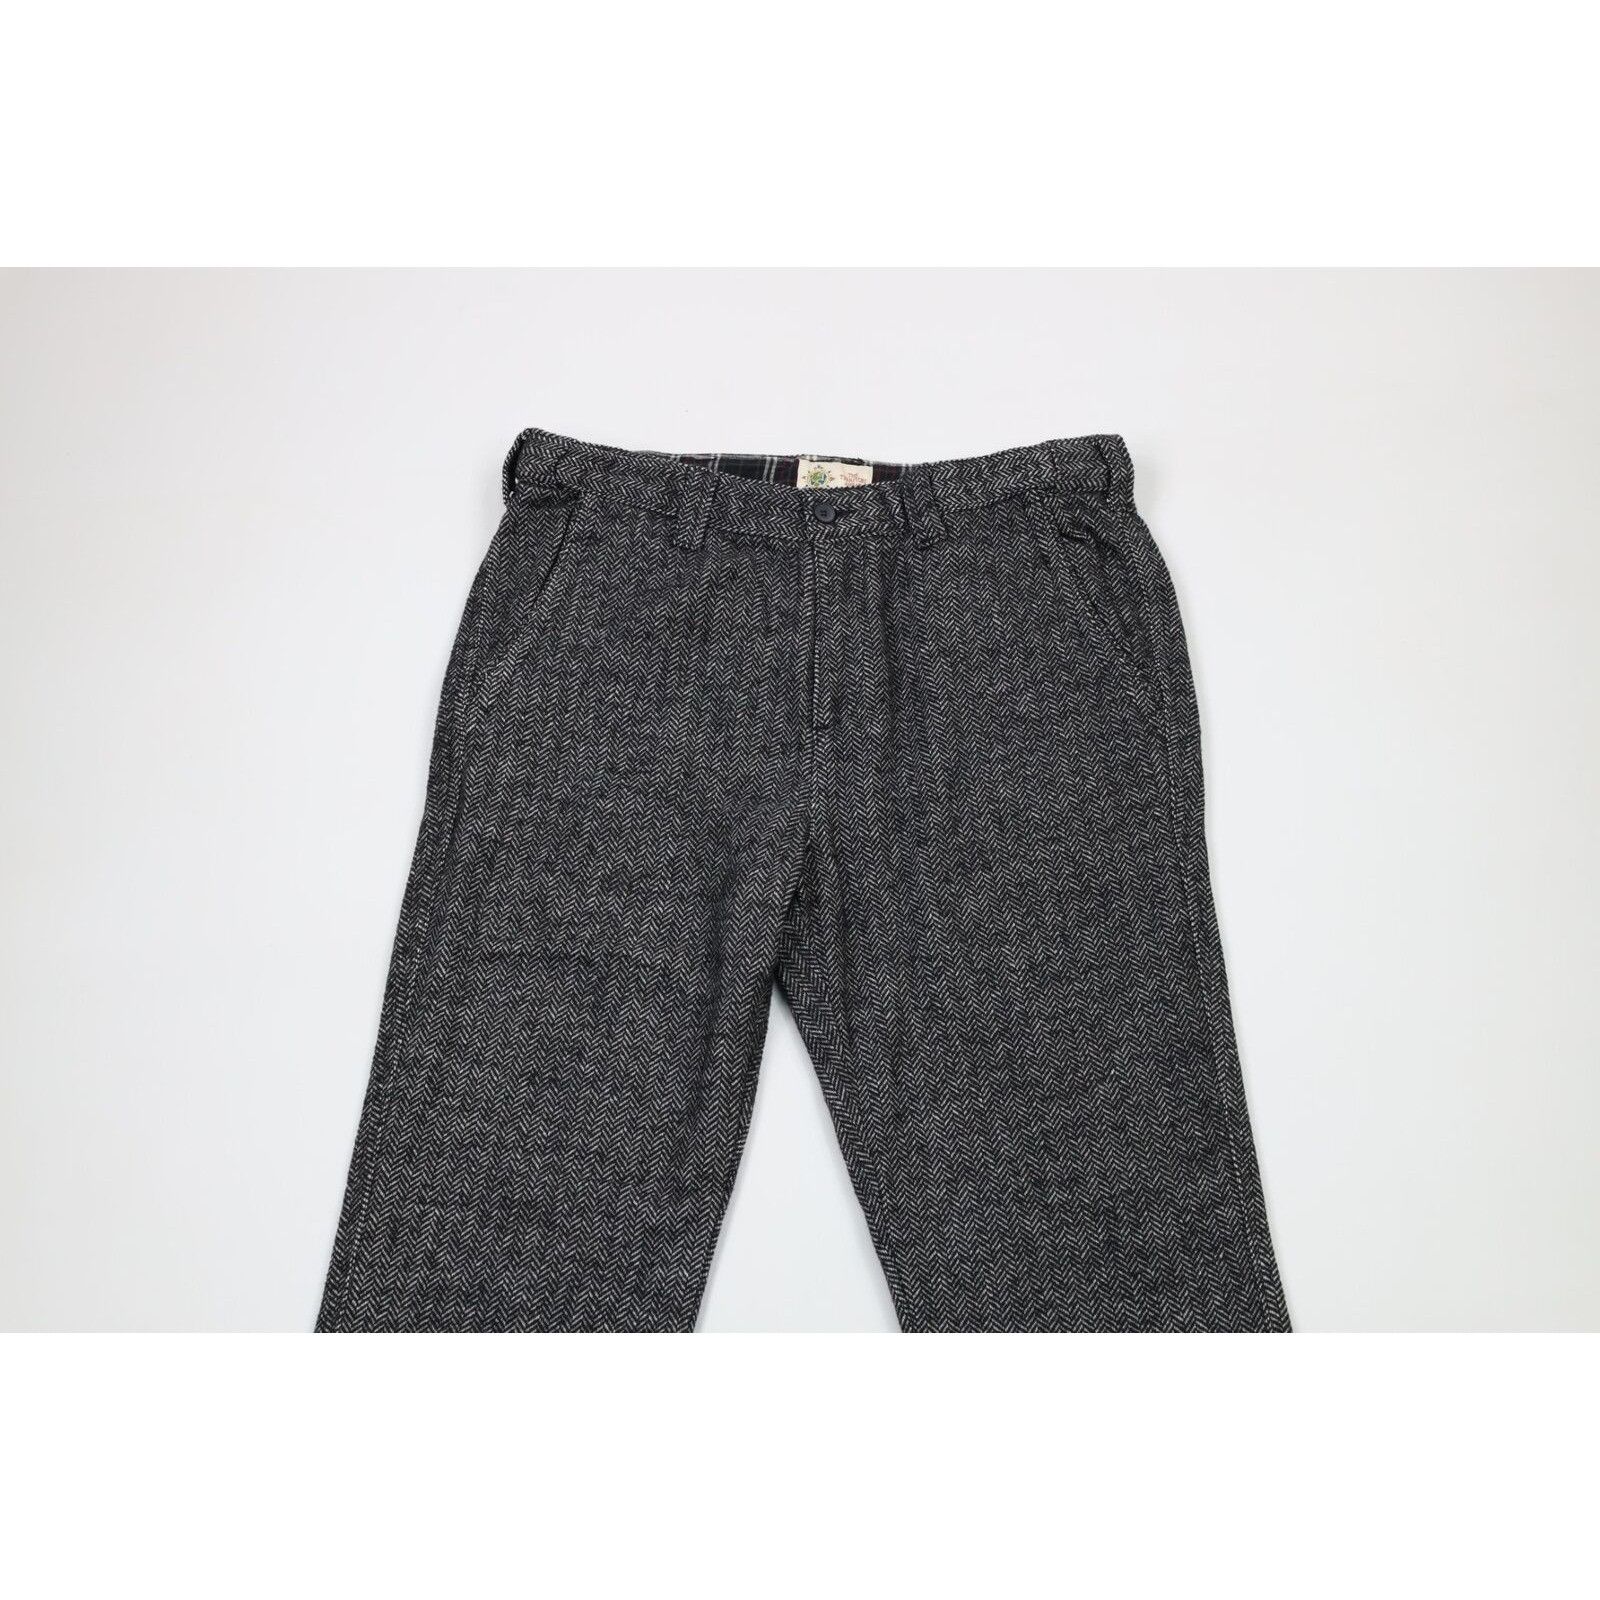 Vintage Vintage 90s Streetwear Tweed Herringbone Chino Pants Size US 34 / EU 50 - 2 Preview